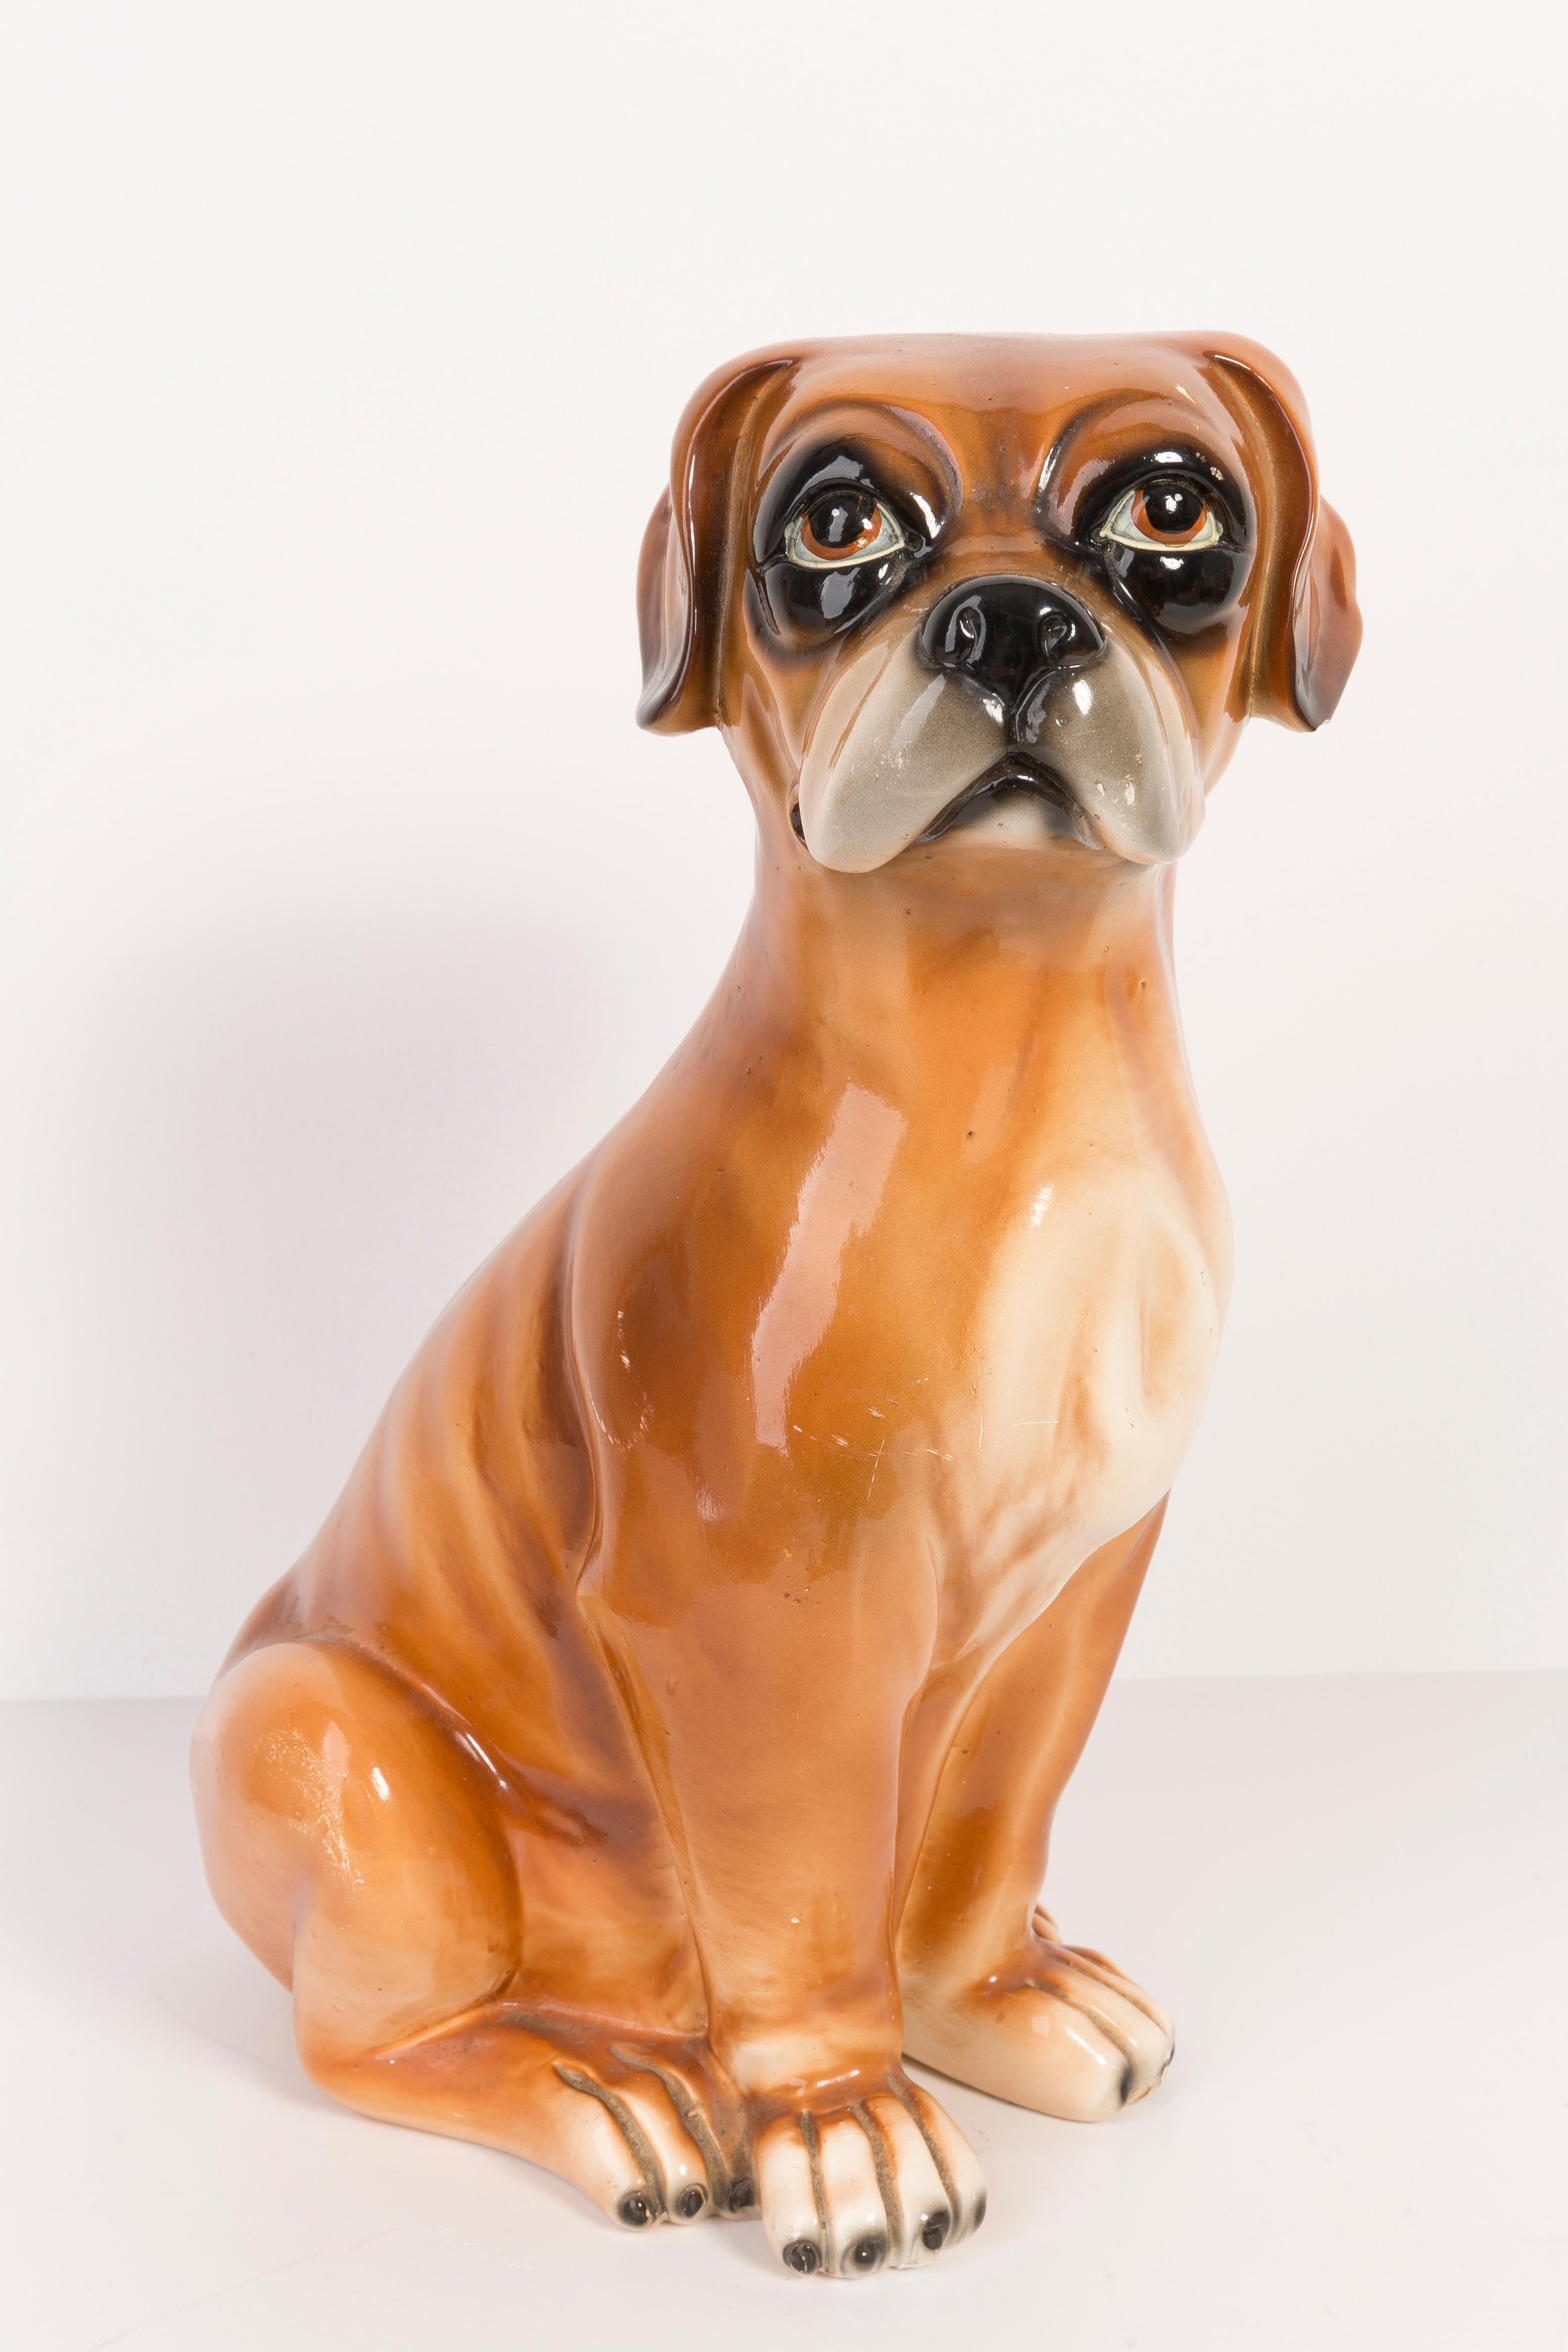 Céramique peinte/terracotta, bon état d'origine vintage. Une sculpture décorative magnifique et unique. Le chien Boxer a été produit dans les années 1960 en Italie.